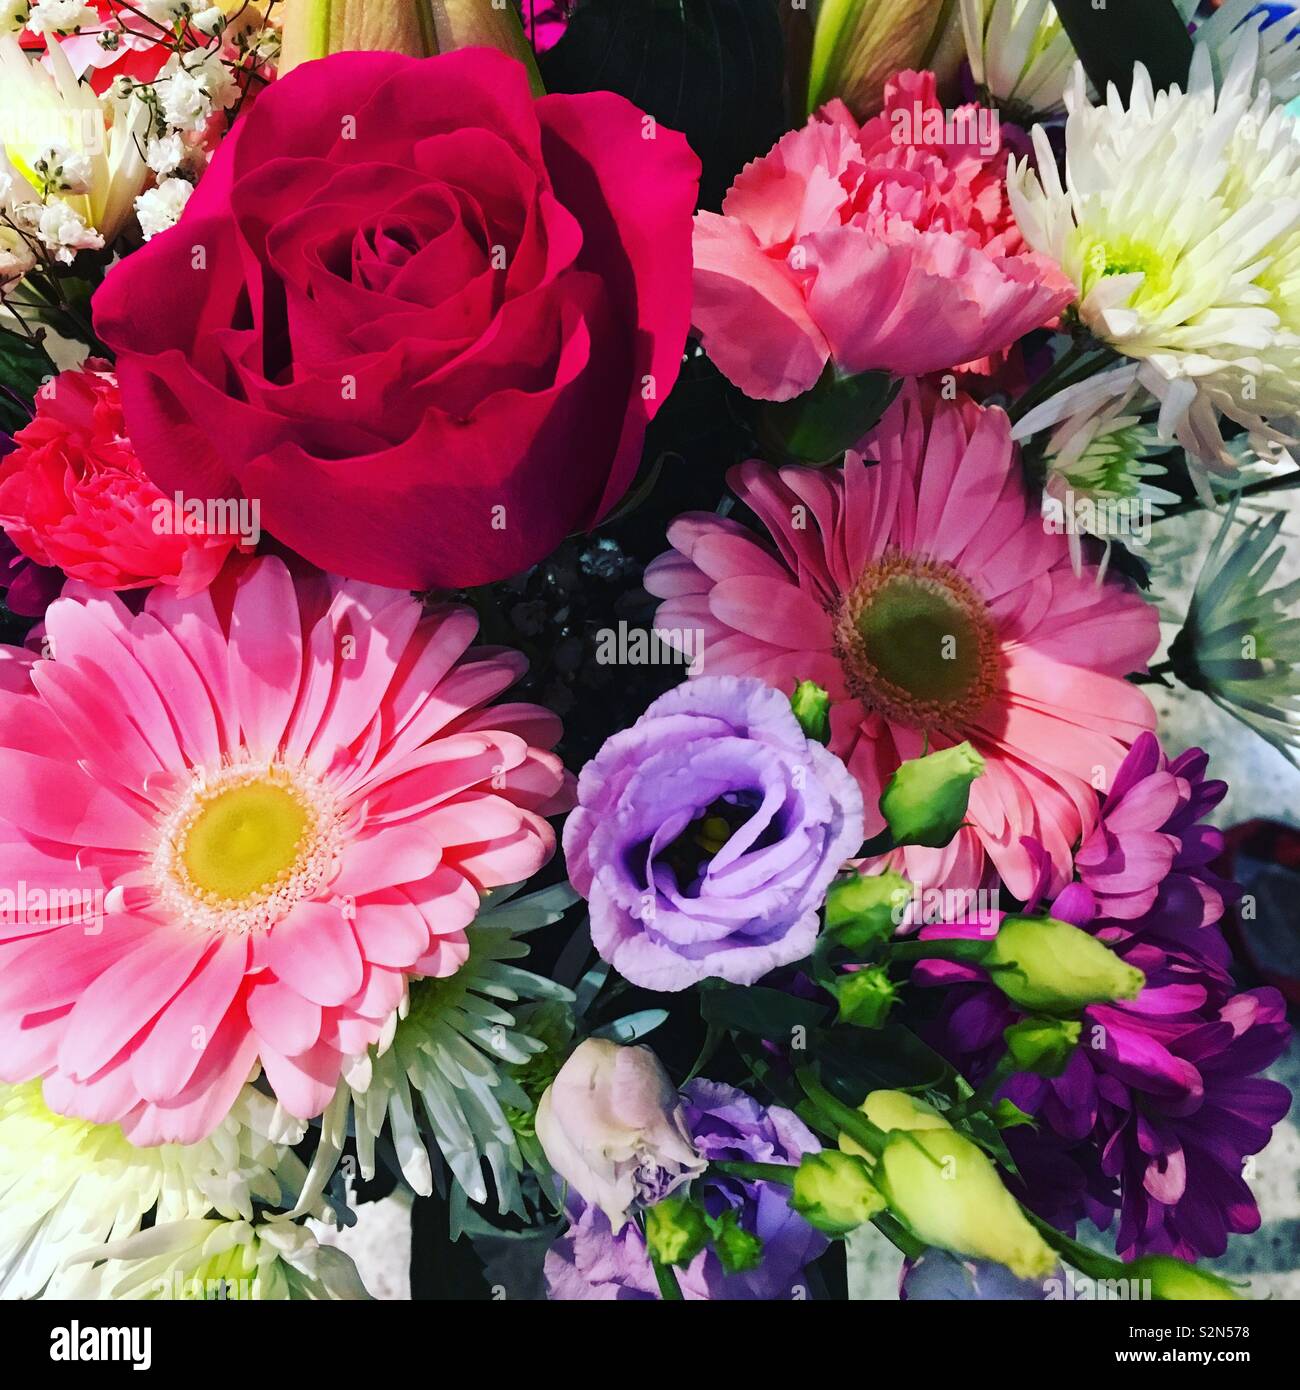 Herzlichen Glückwunsch zum Geburtstag Blumen Stockfoto